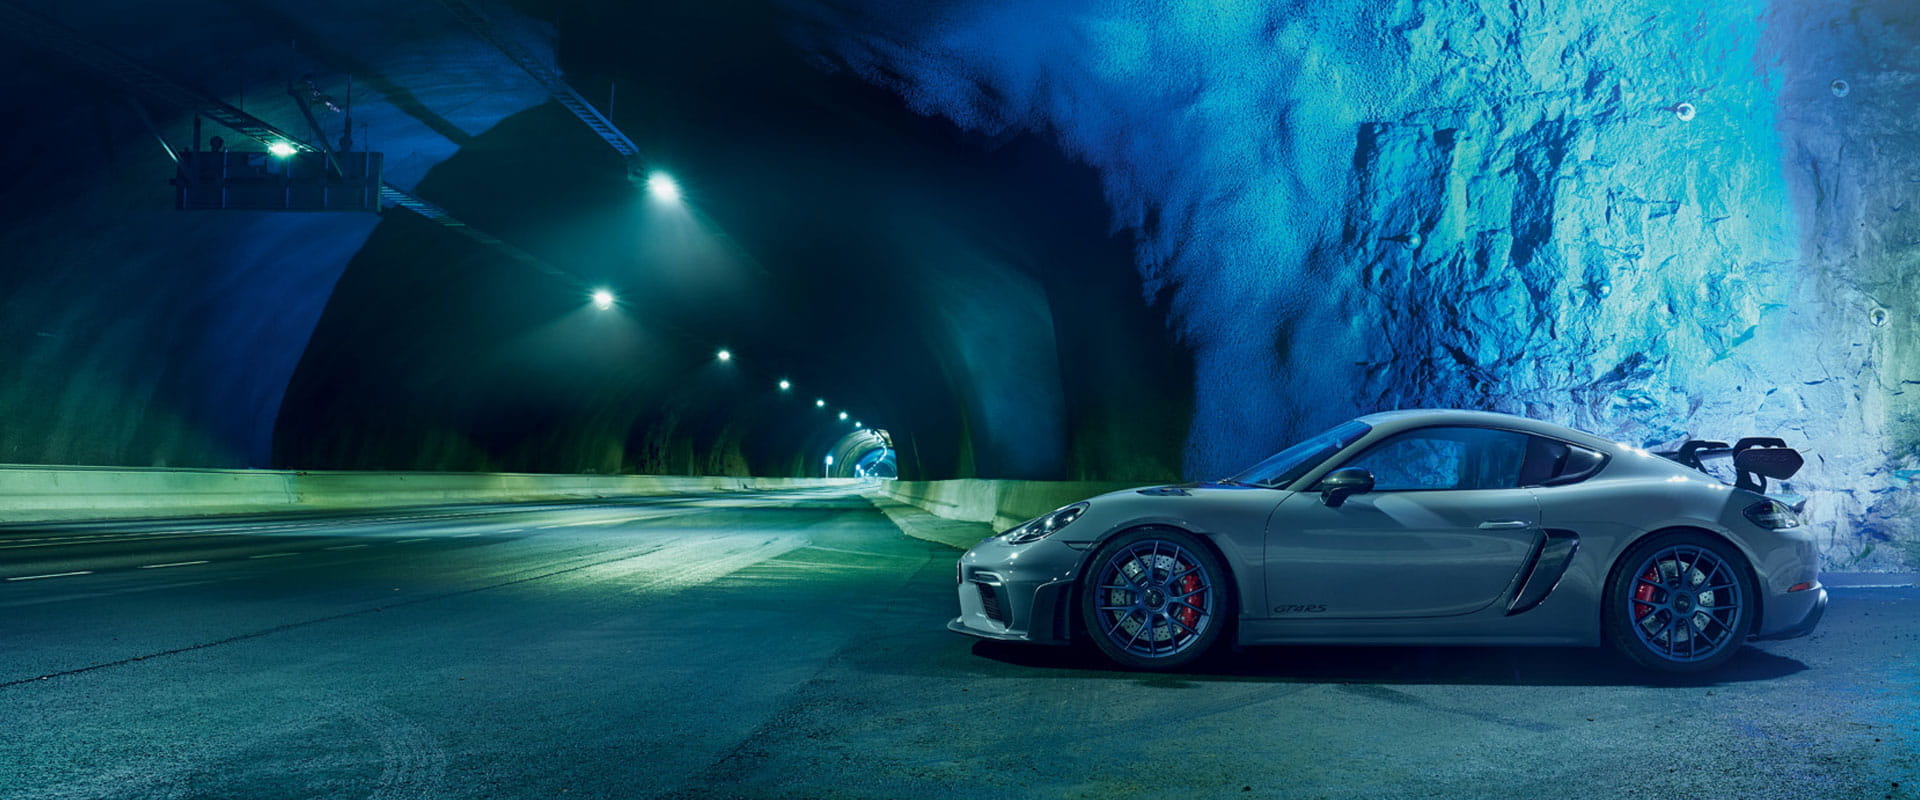 Porsche Blue iPhone Wallpapers - Wallpaper Cave